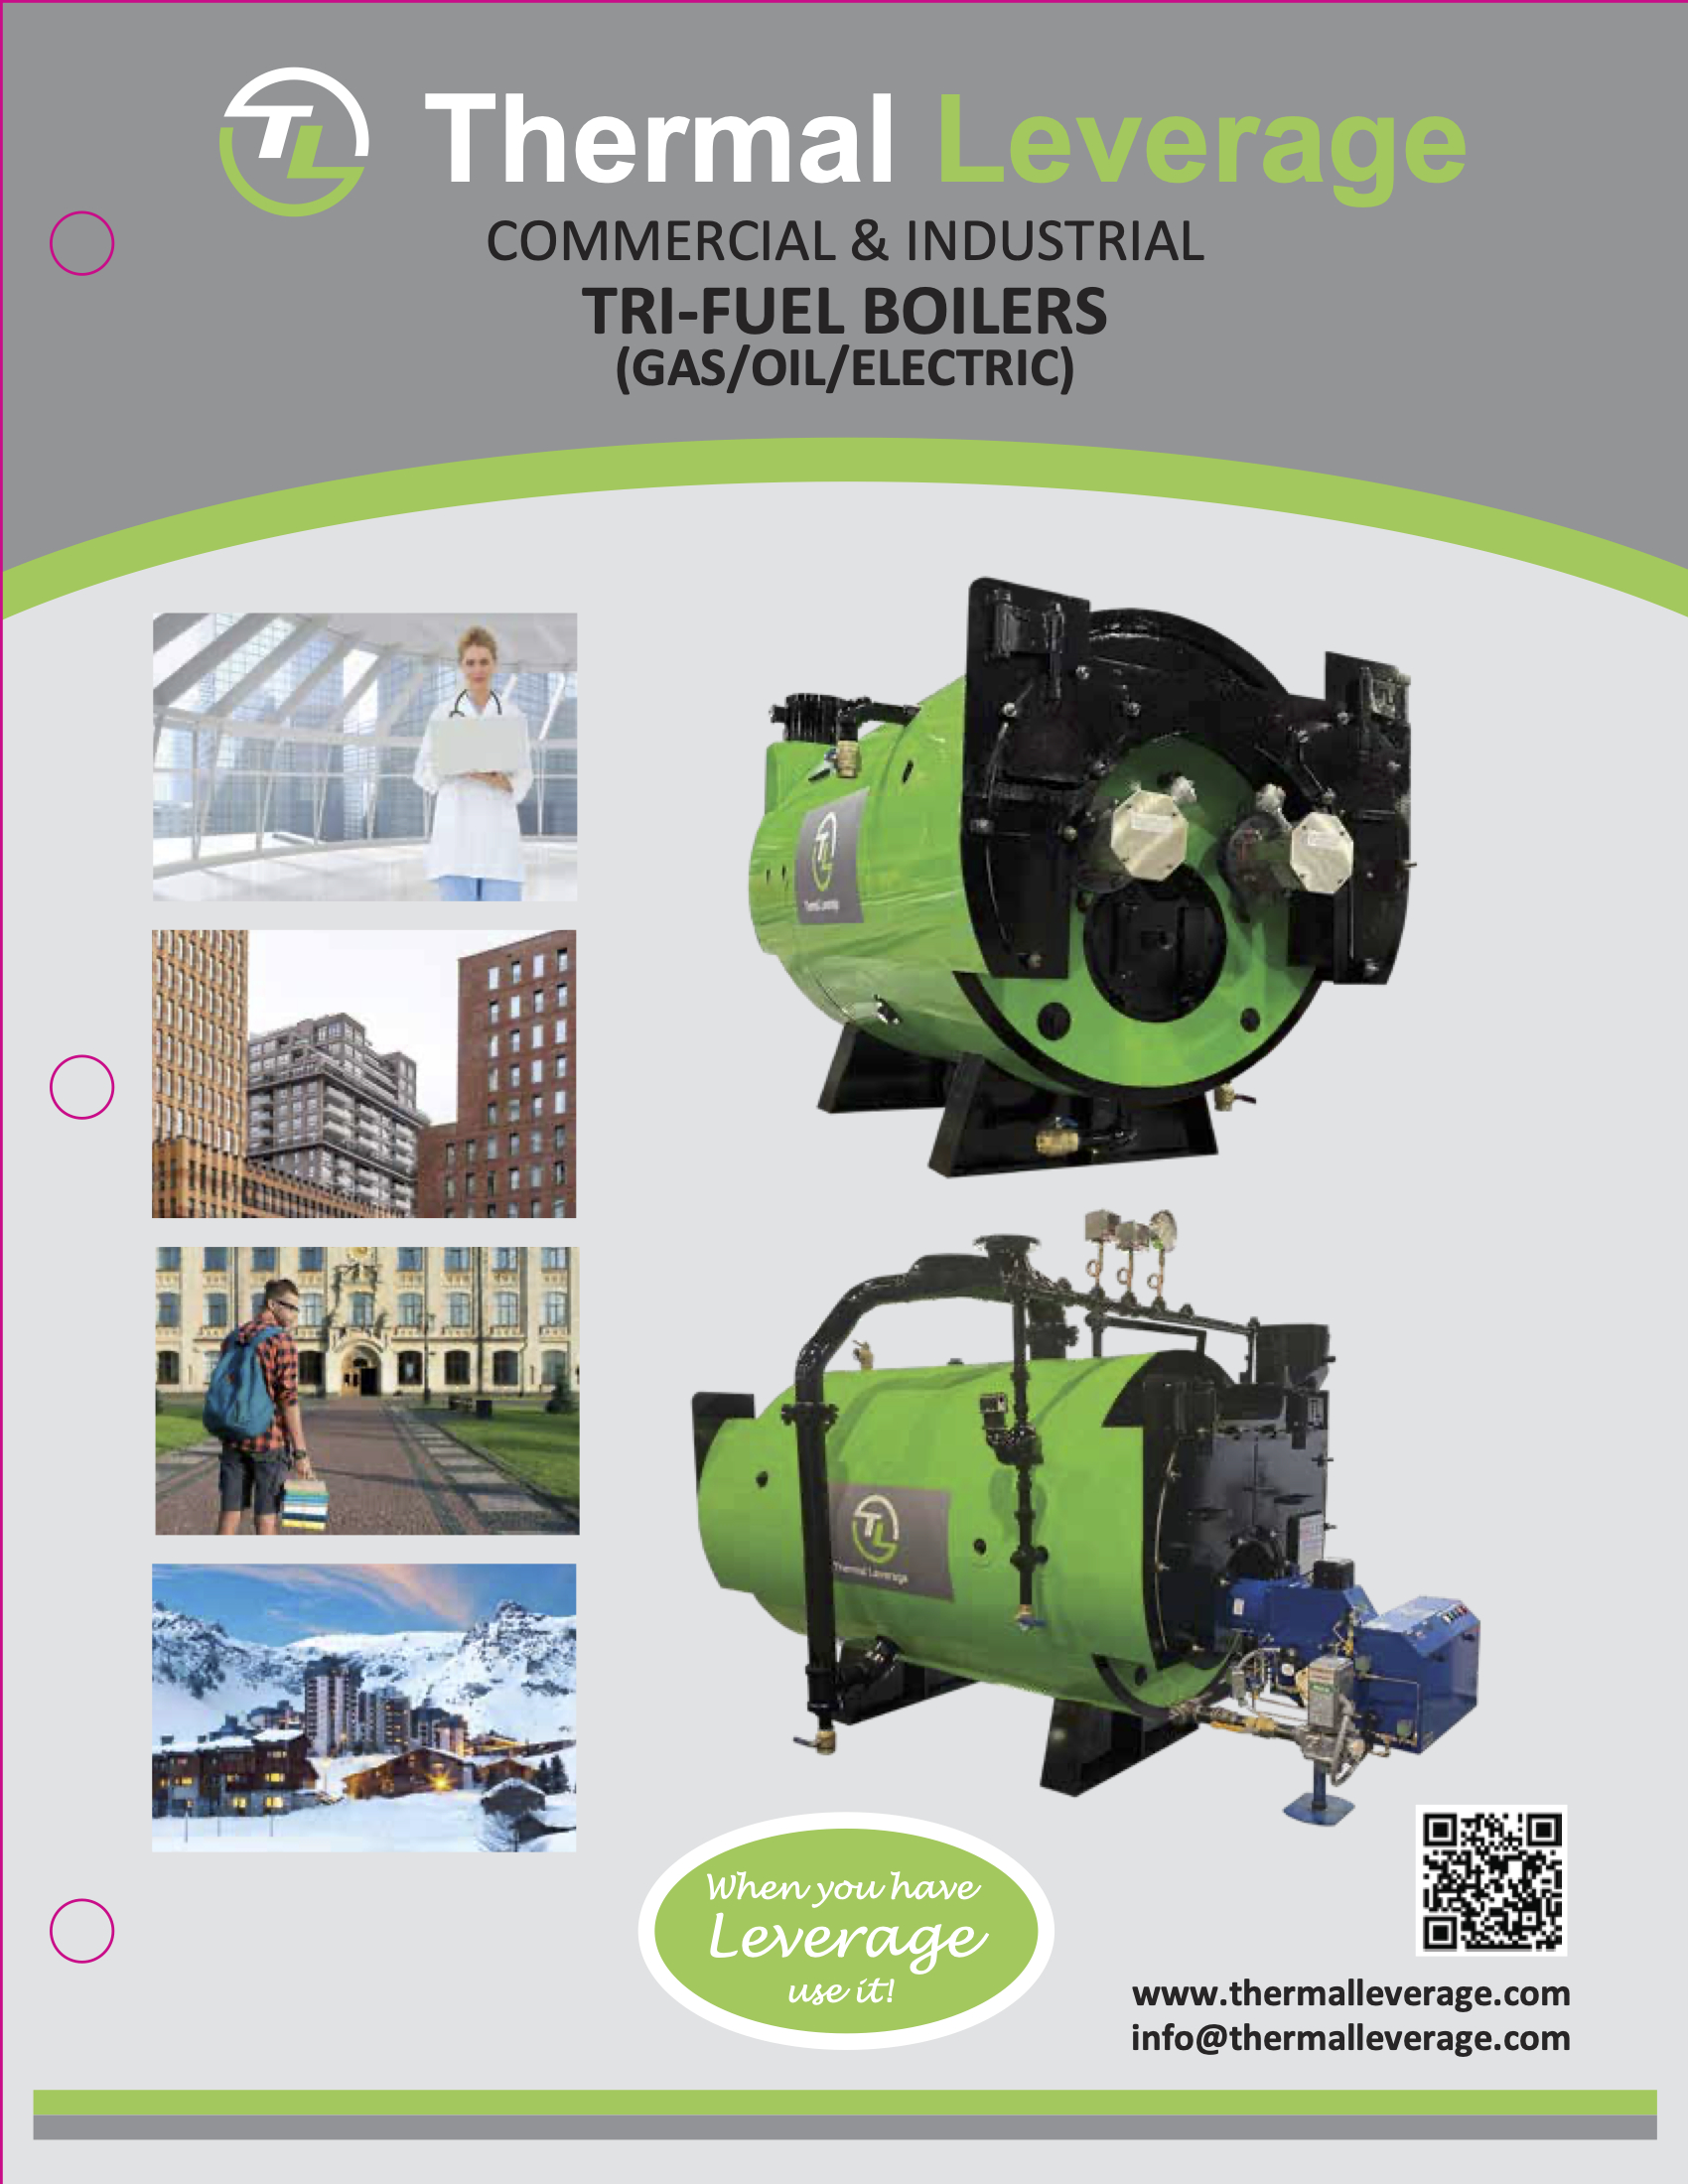 images/Tri-fuel-Boiler-Brochure-NewV4-thumb.jpg